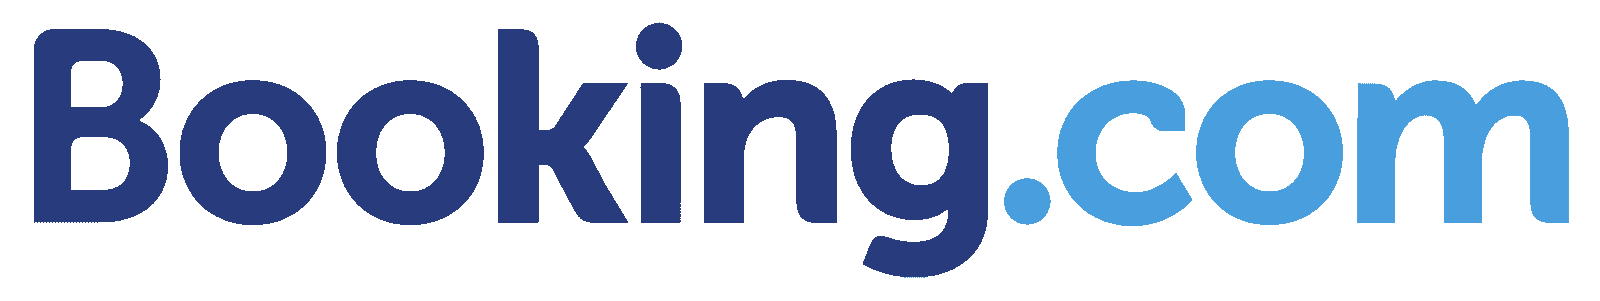 Booking.com partner logo